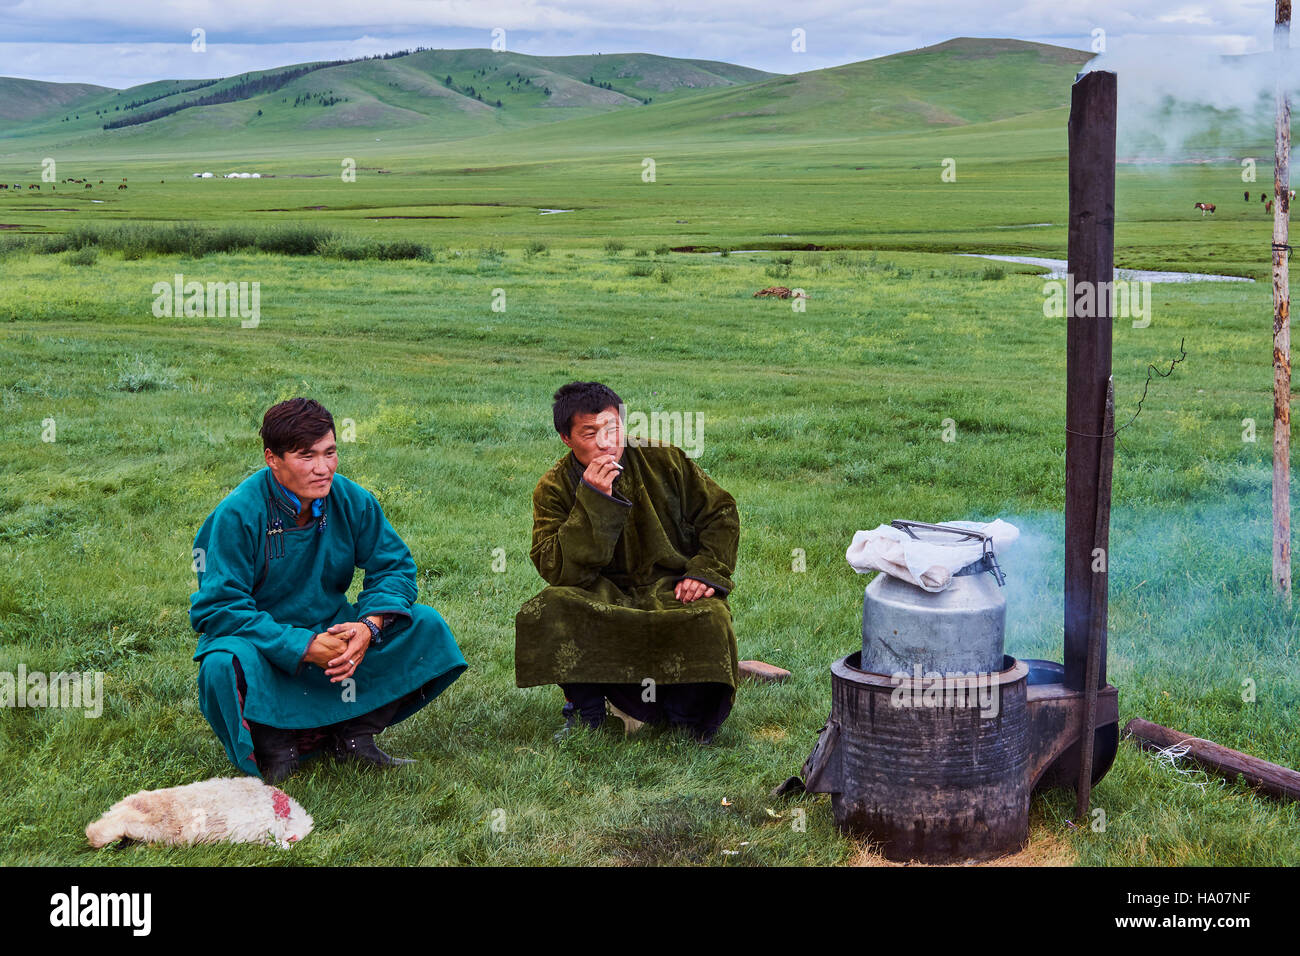 La Mongolie, province Arkhangai, camp nomade yourte dans la steppe mongole, la cuisson barbecue Banque D'Images